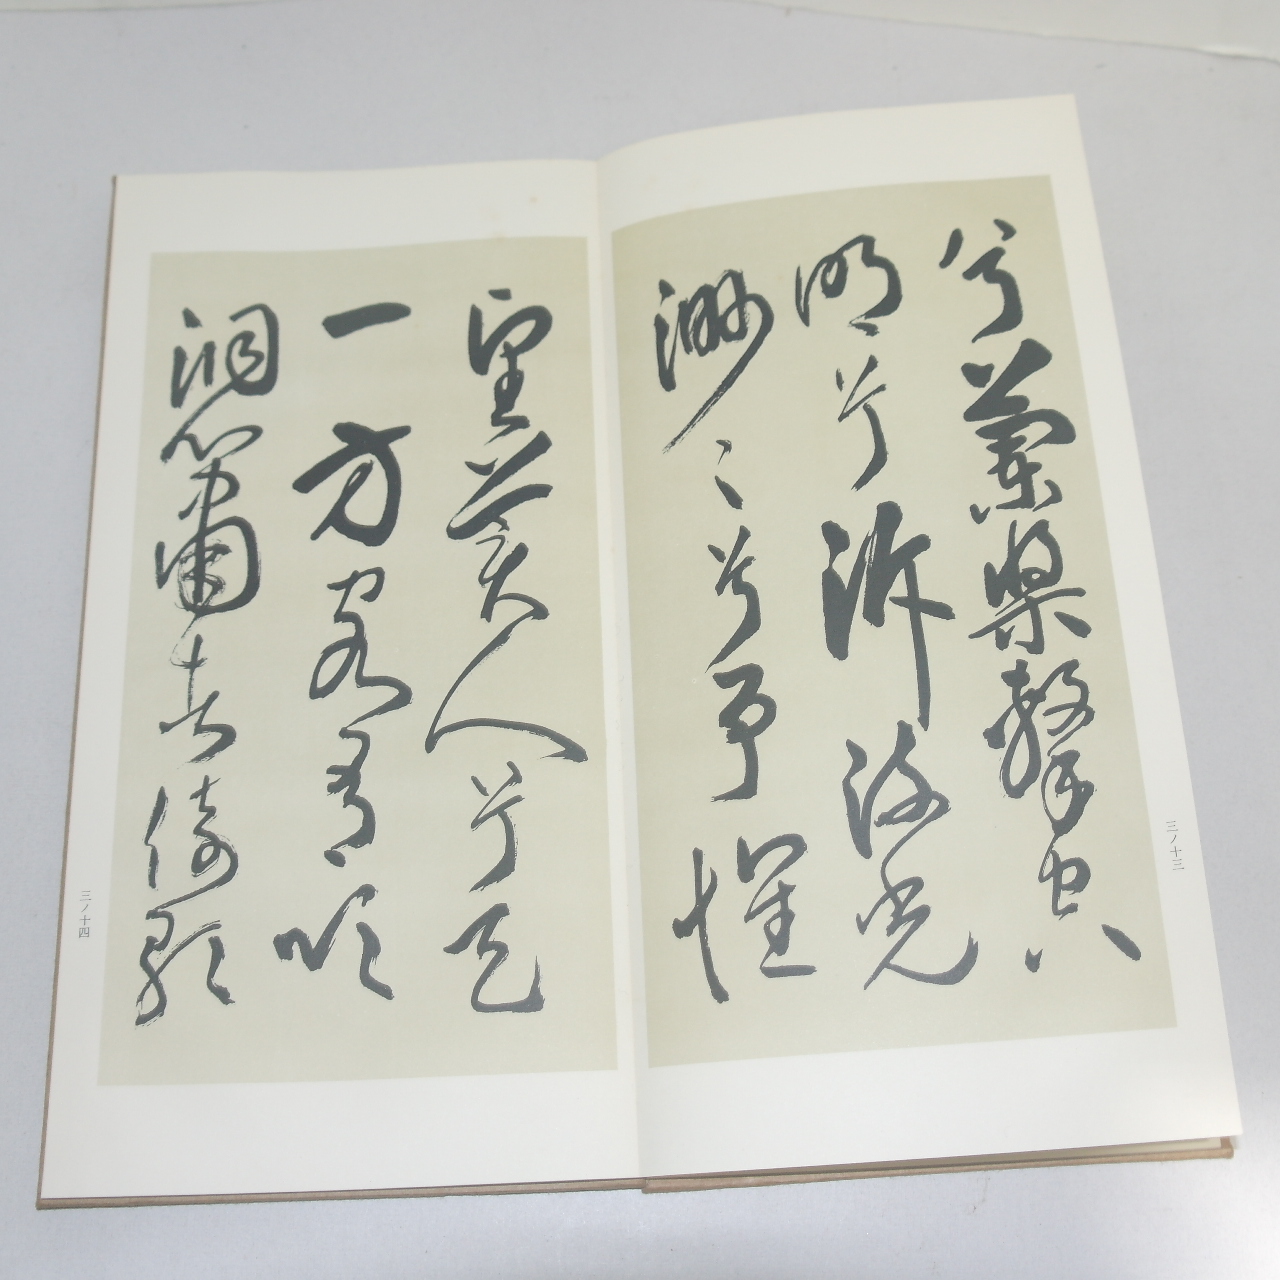 1968년(소화43년) 일본간행 절첩본 초서전적벽부(草書前赤壁賦)